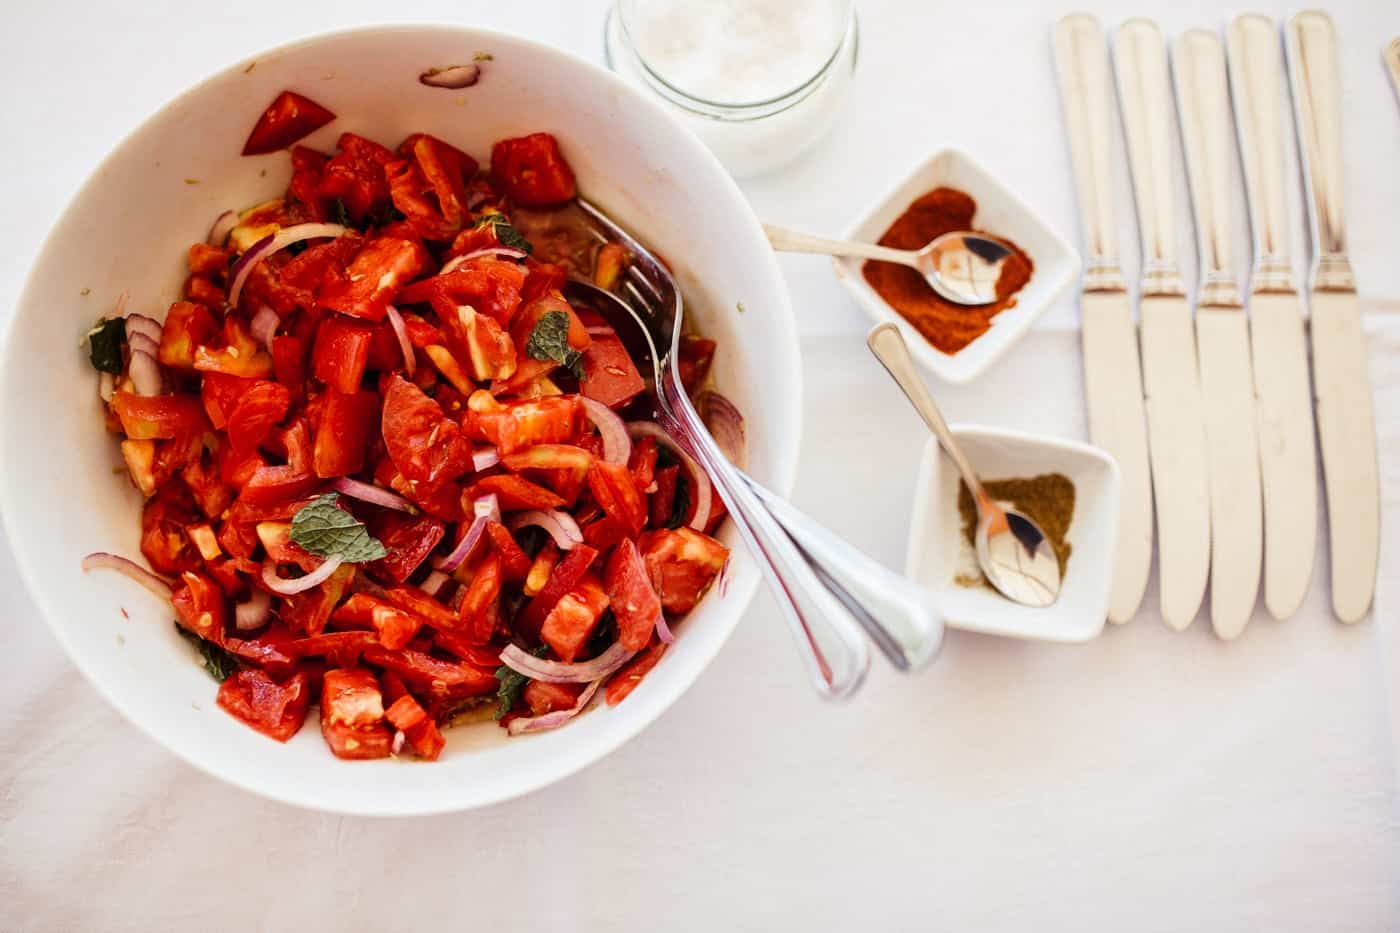 Rezept an der Algarve: Tomatensalat, hezrundblut